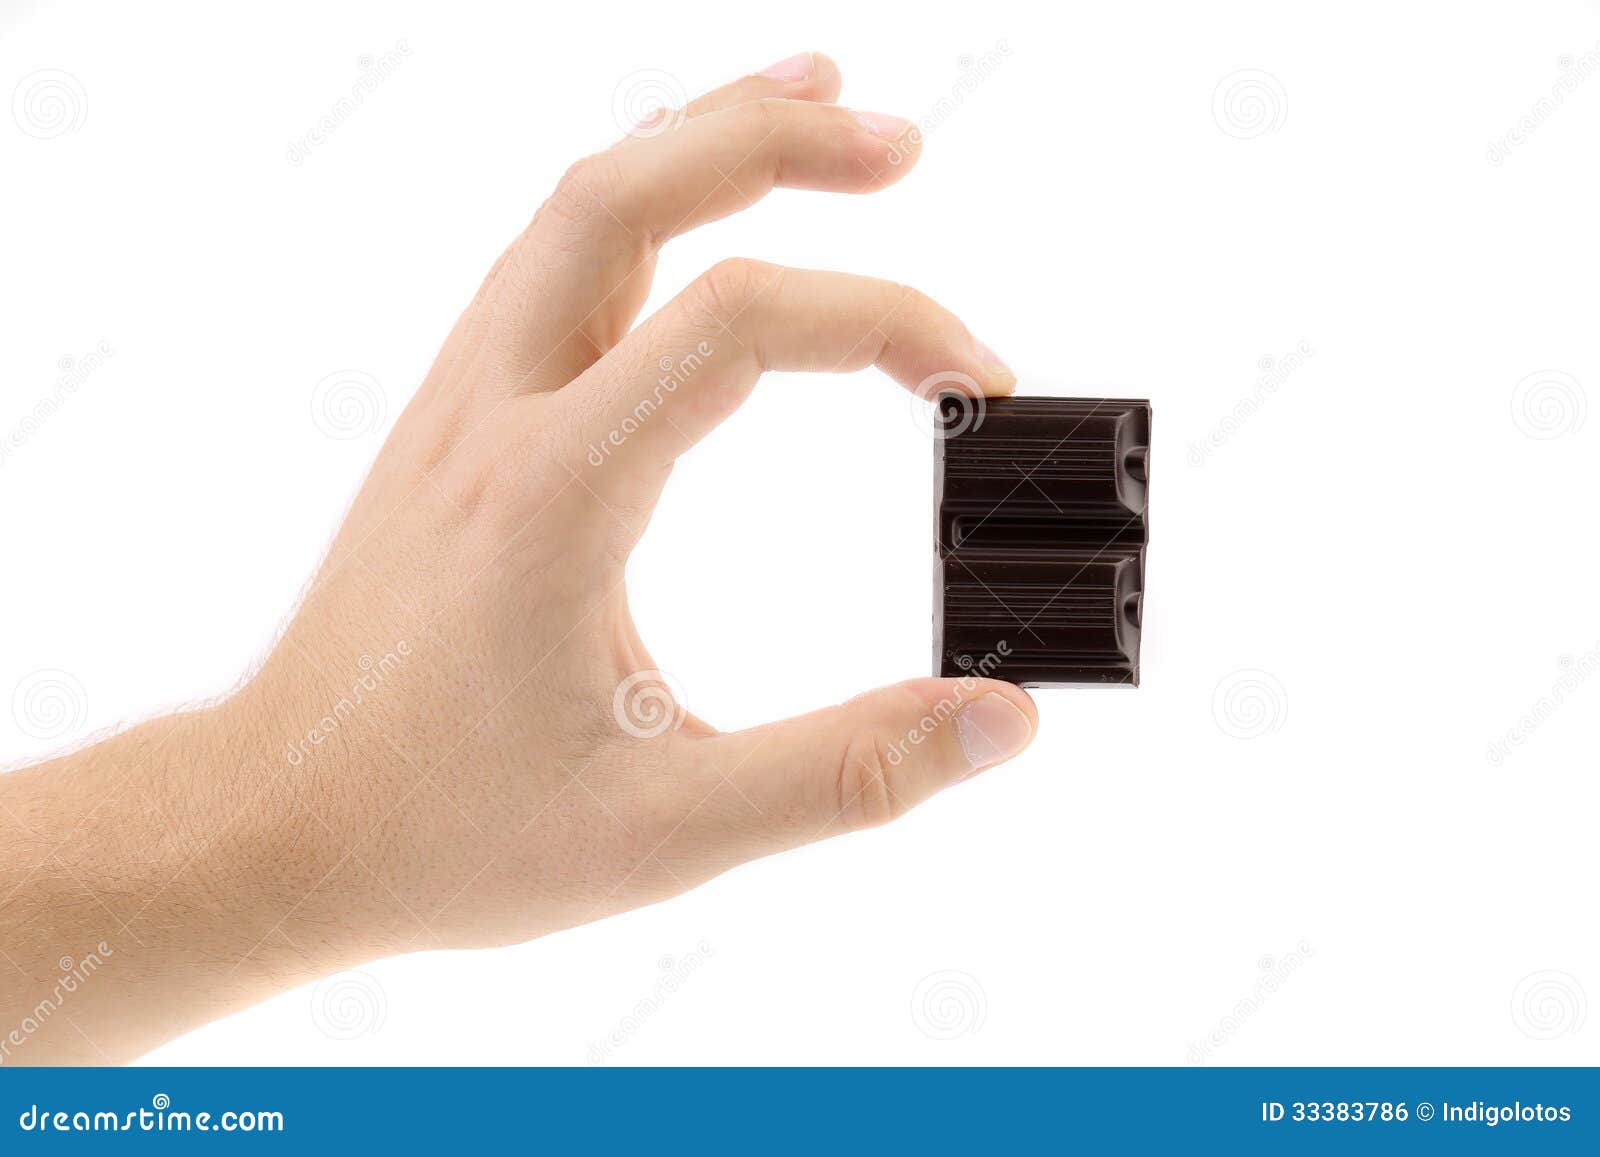 Почему шоколад тает в руках